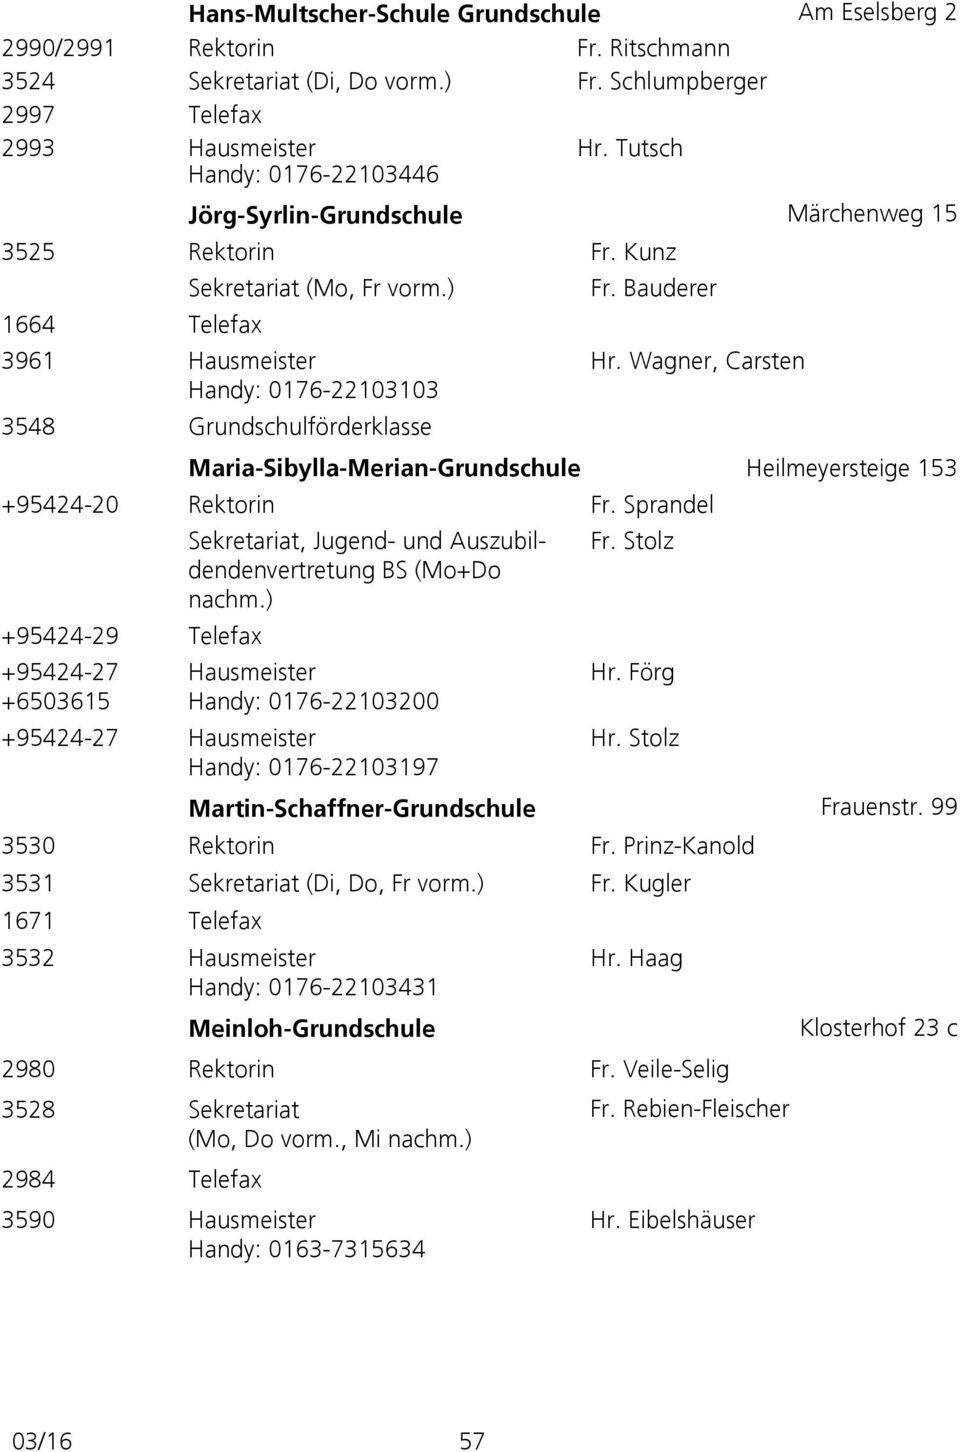 Wagner, Carsten Handy: 0176-22103103 3548 Grundschulförderklasse Maria-Sibylla-Merian-Grundschule Heilmeyersteige 153 +95424-20 Rektorin Fr.